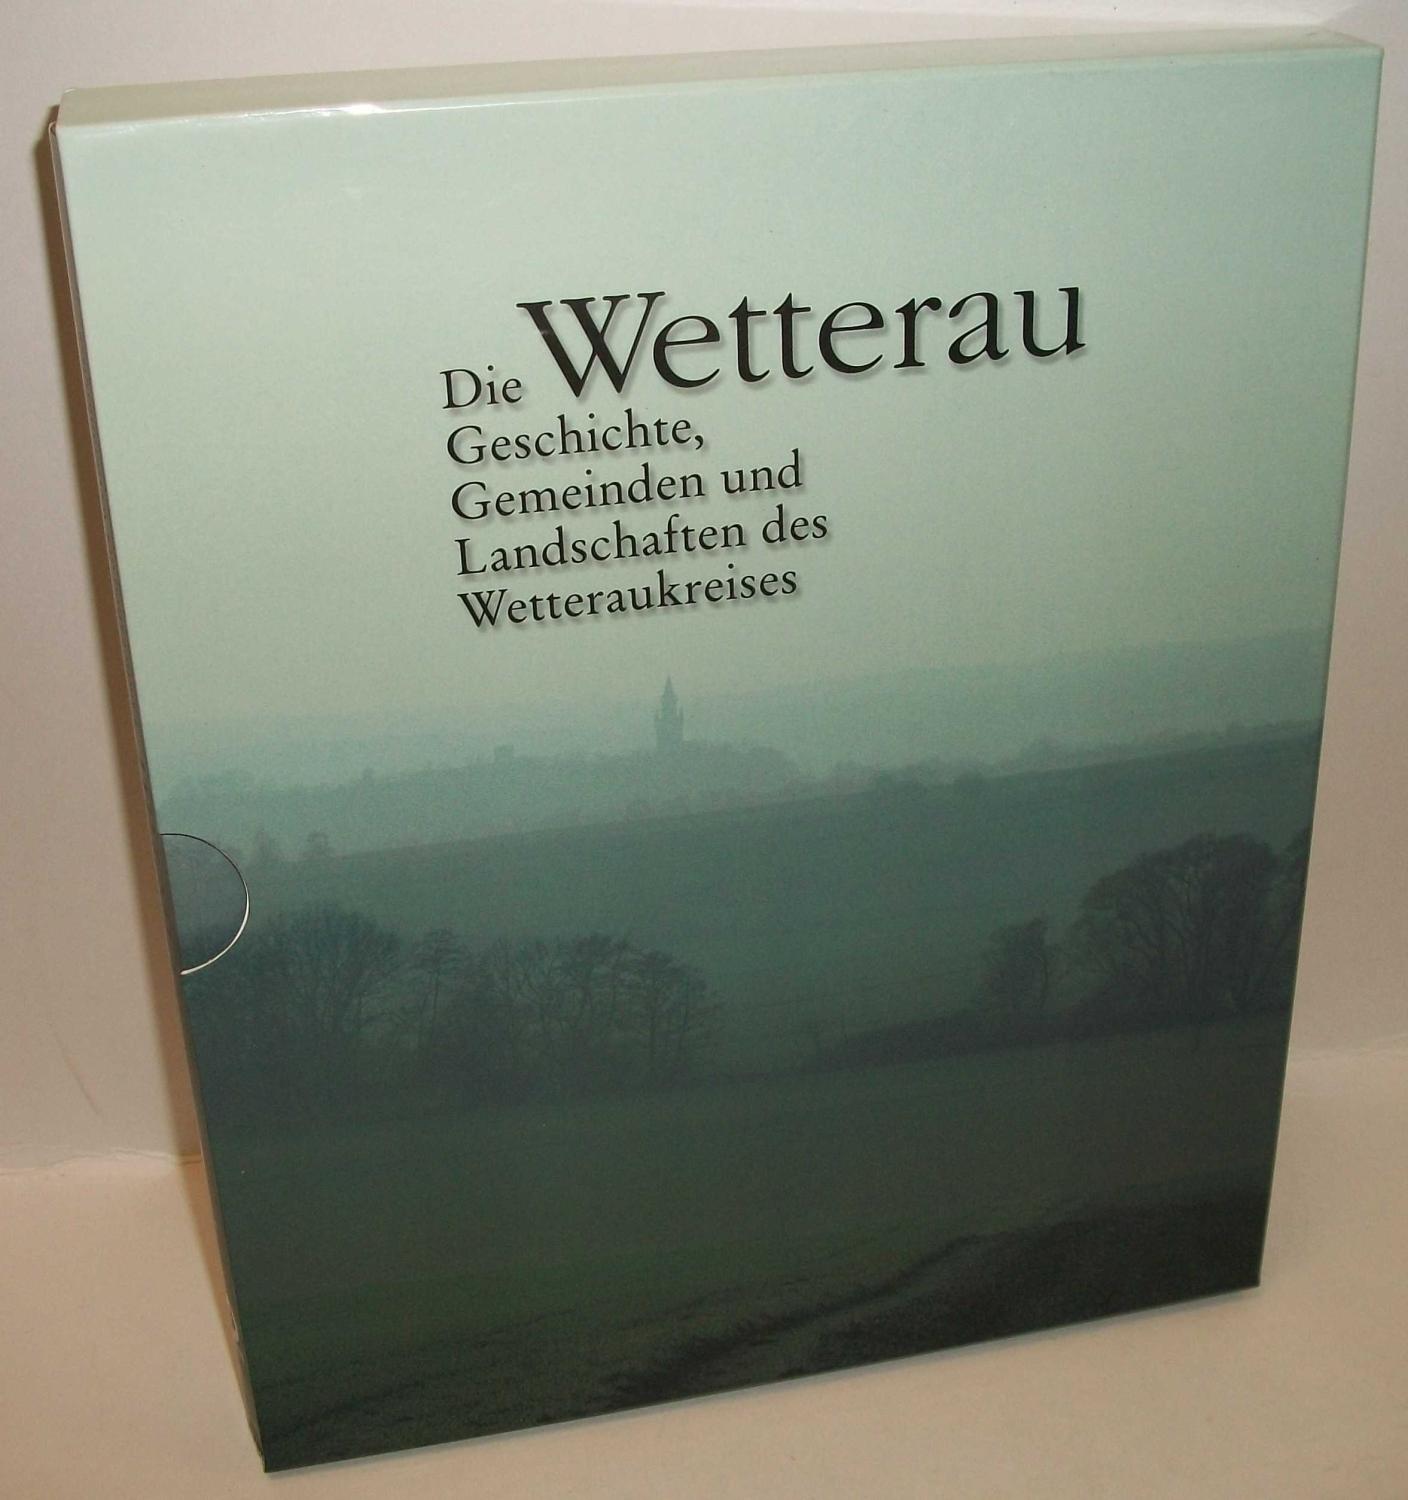 Die Wetterau: Die Geschichte, Gemeinden und Landschaften des Wetteraukreises. Dokumentationen einer Landschaft in Wort und Bild